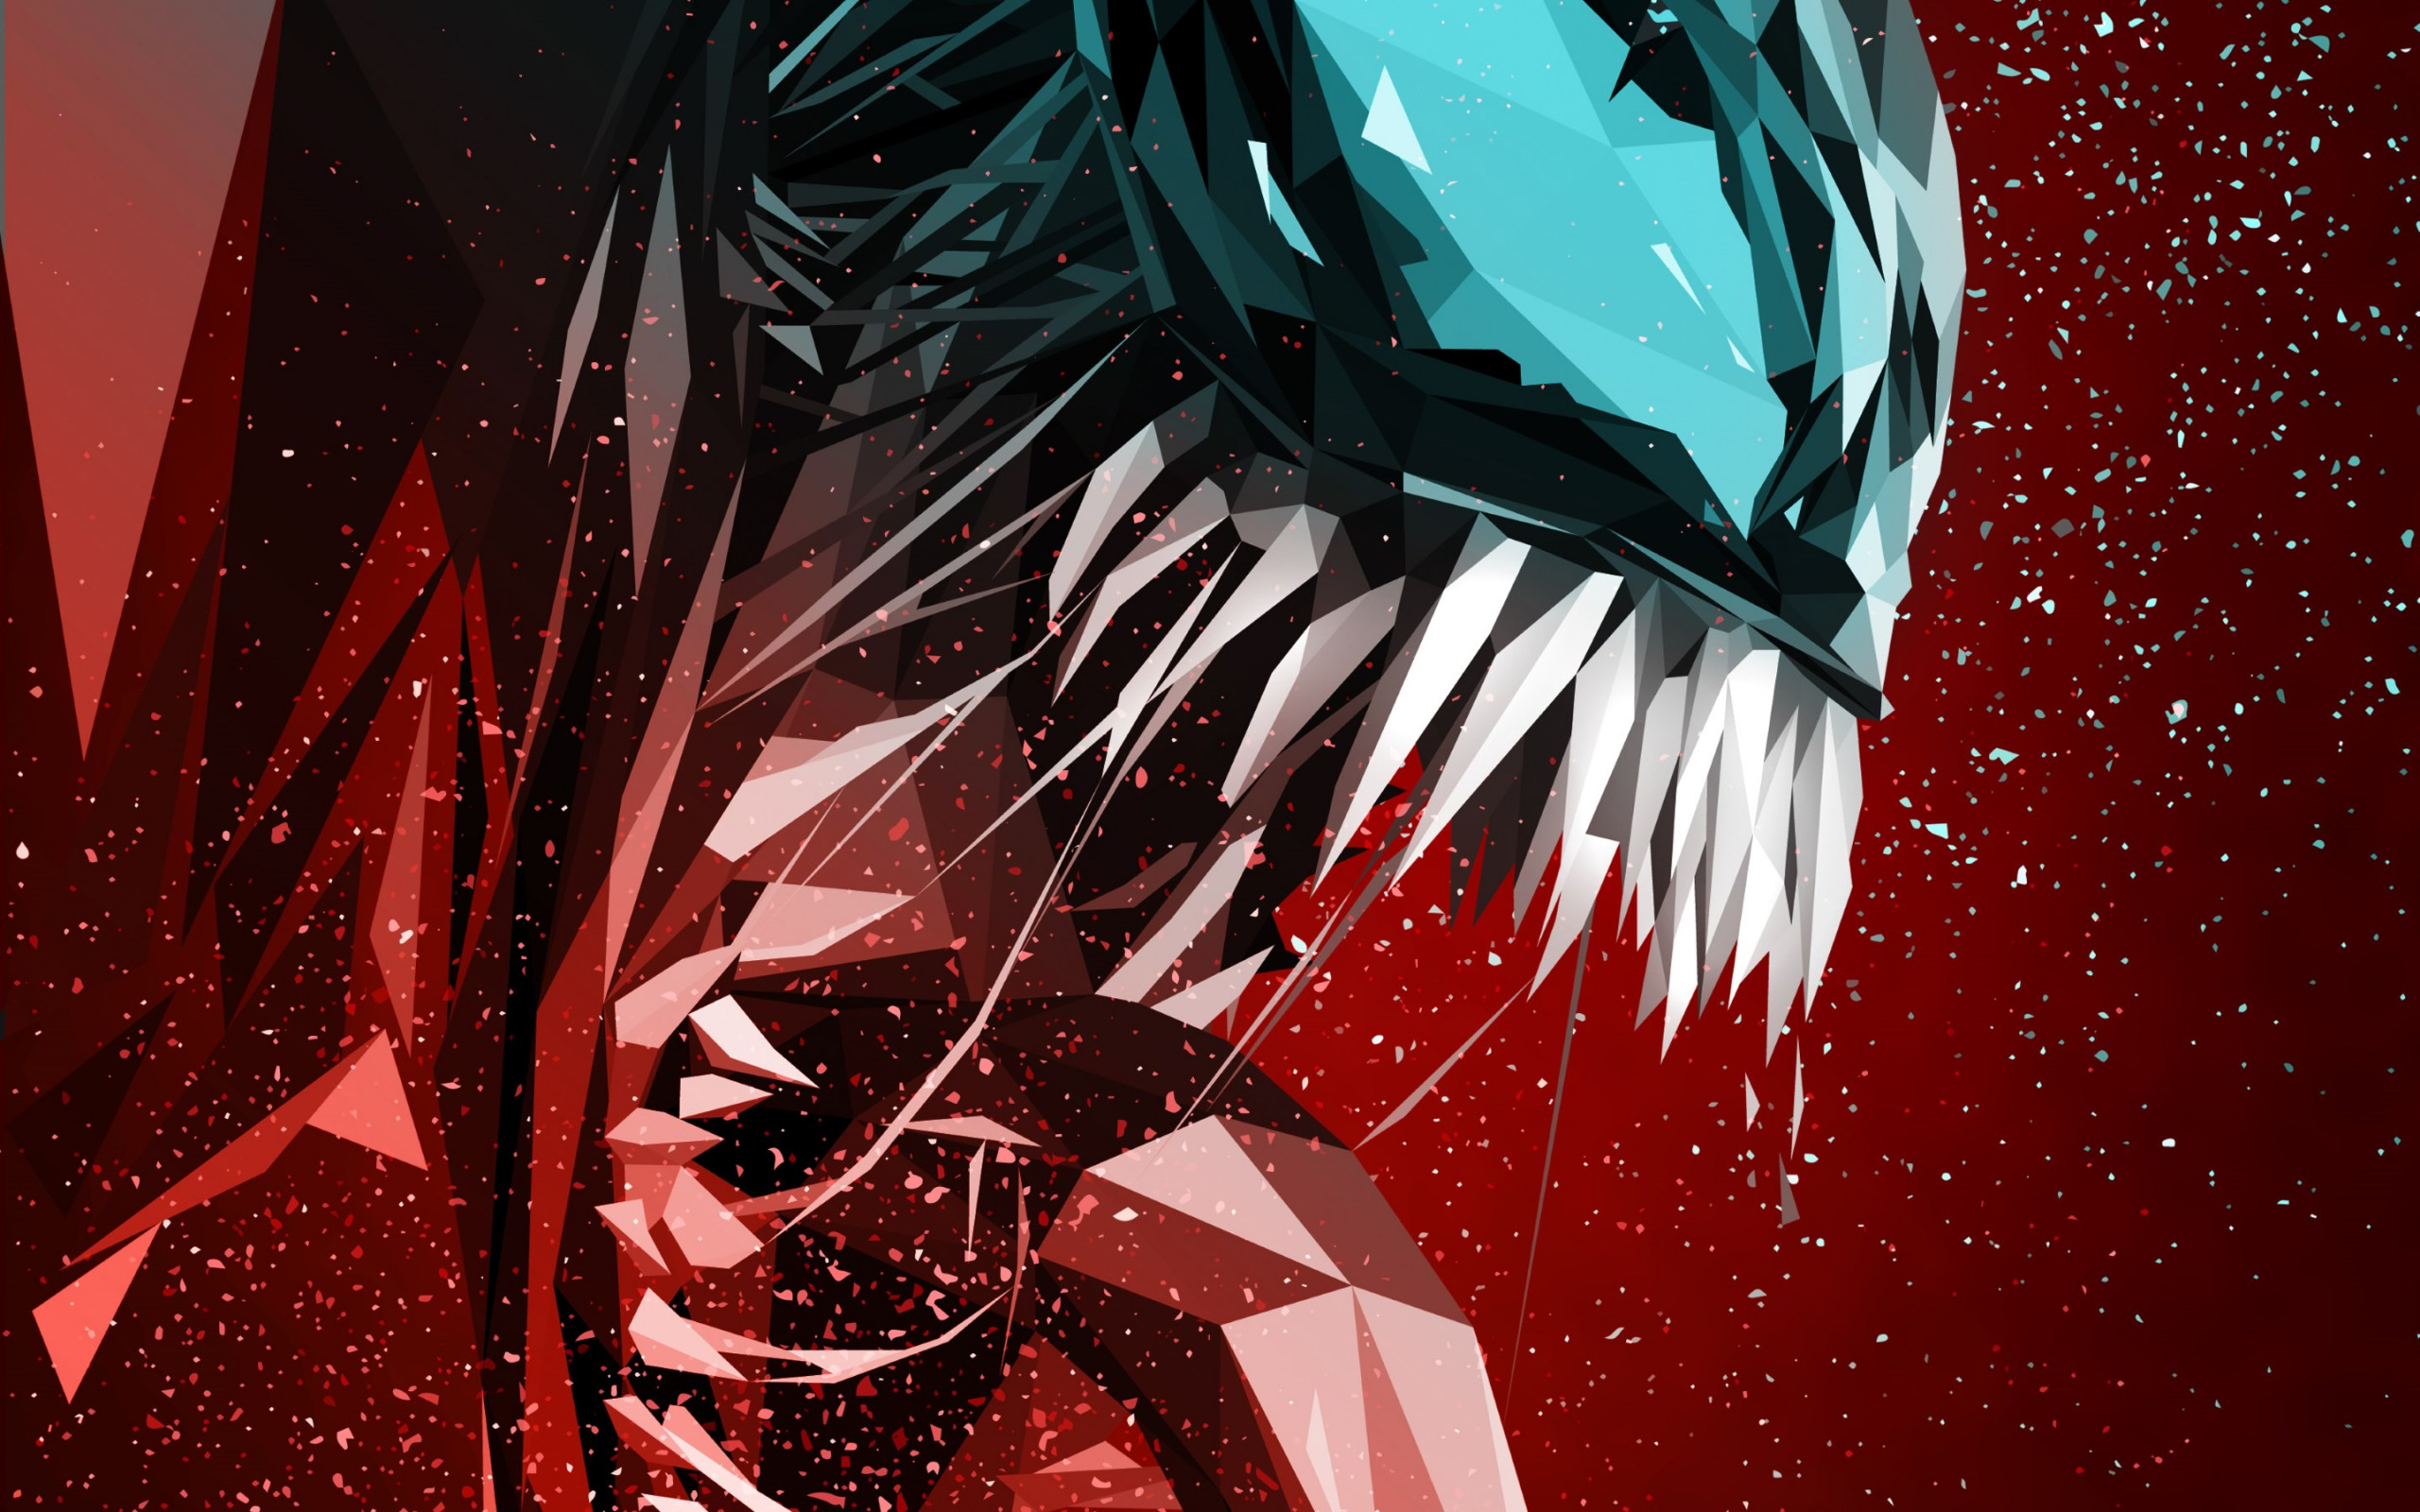 Venom digital art poster wallpaper 2560x1600